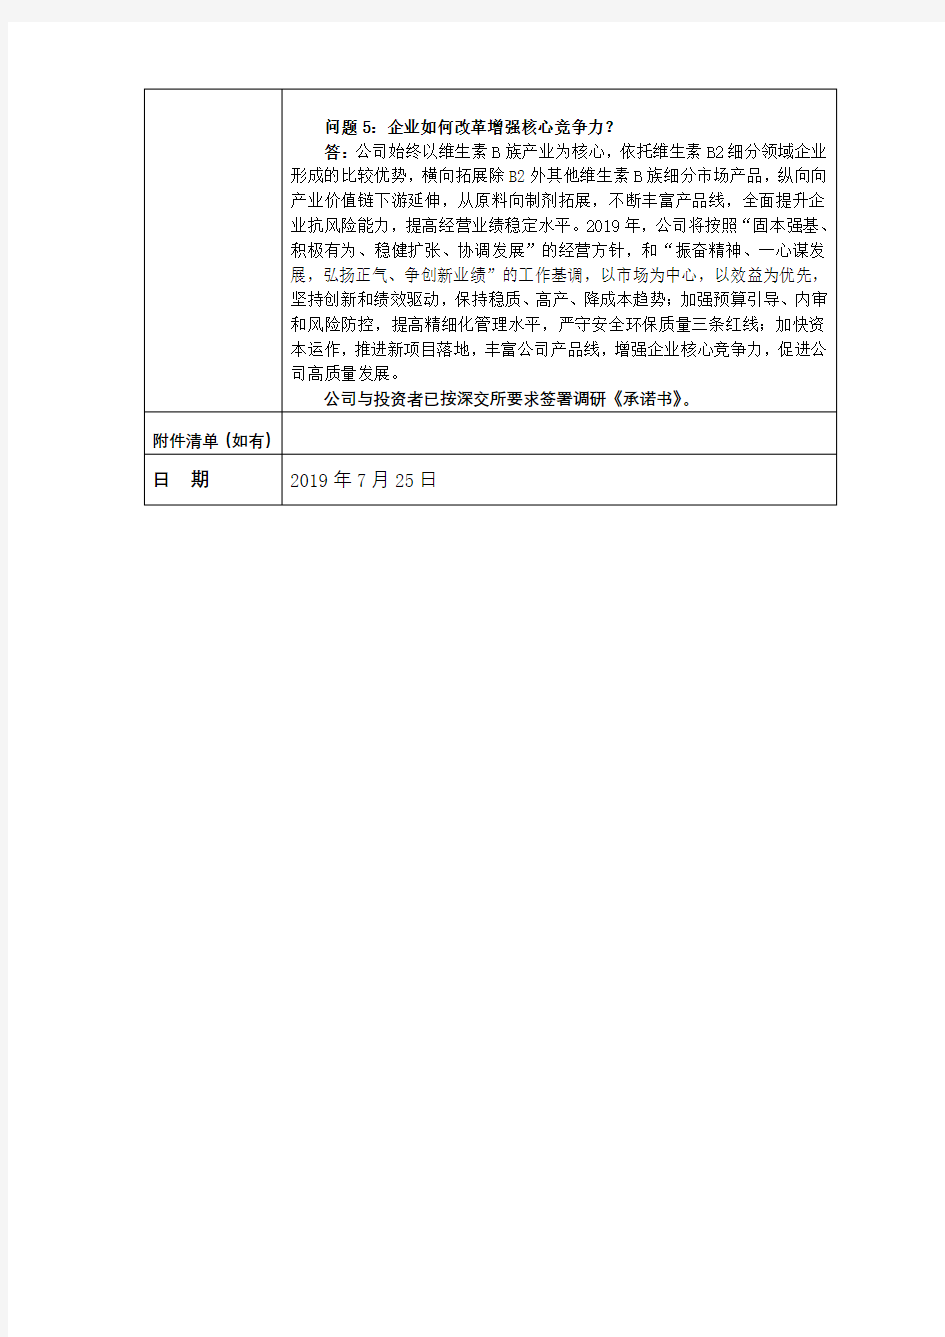 湖北广济药业股份有限公司投资者关系活动记录表【模板】